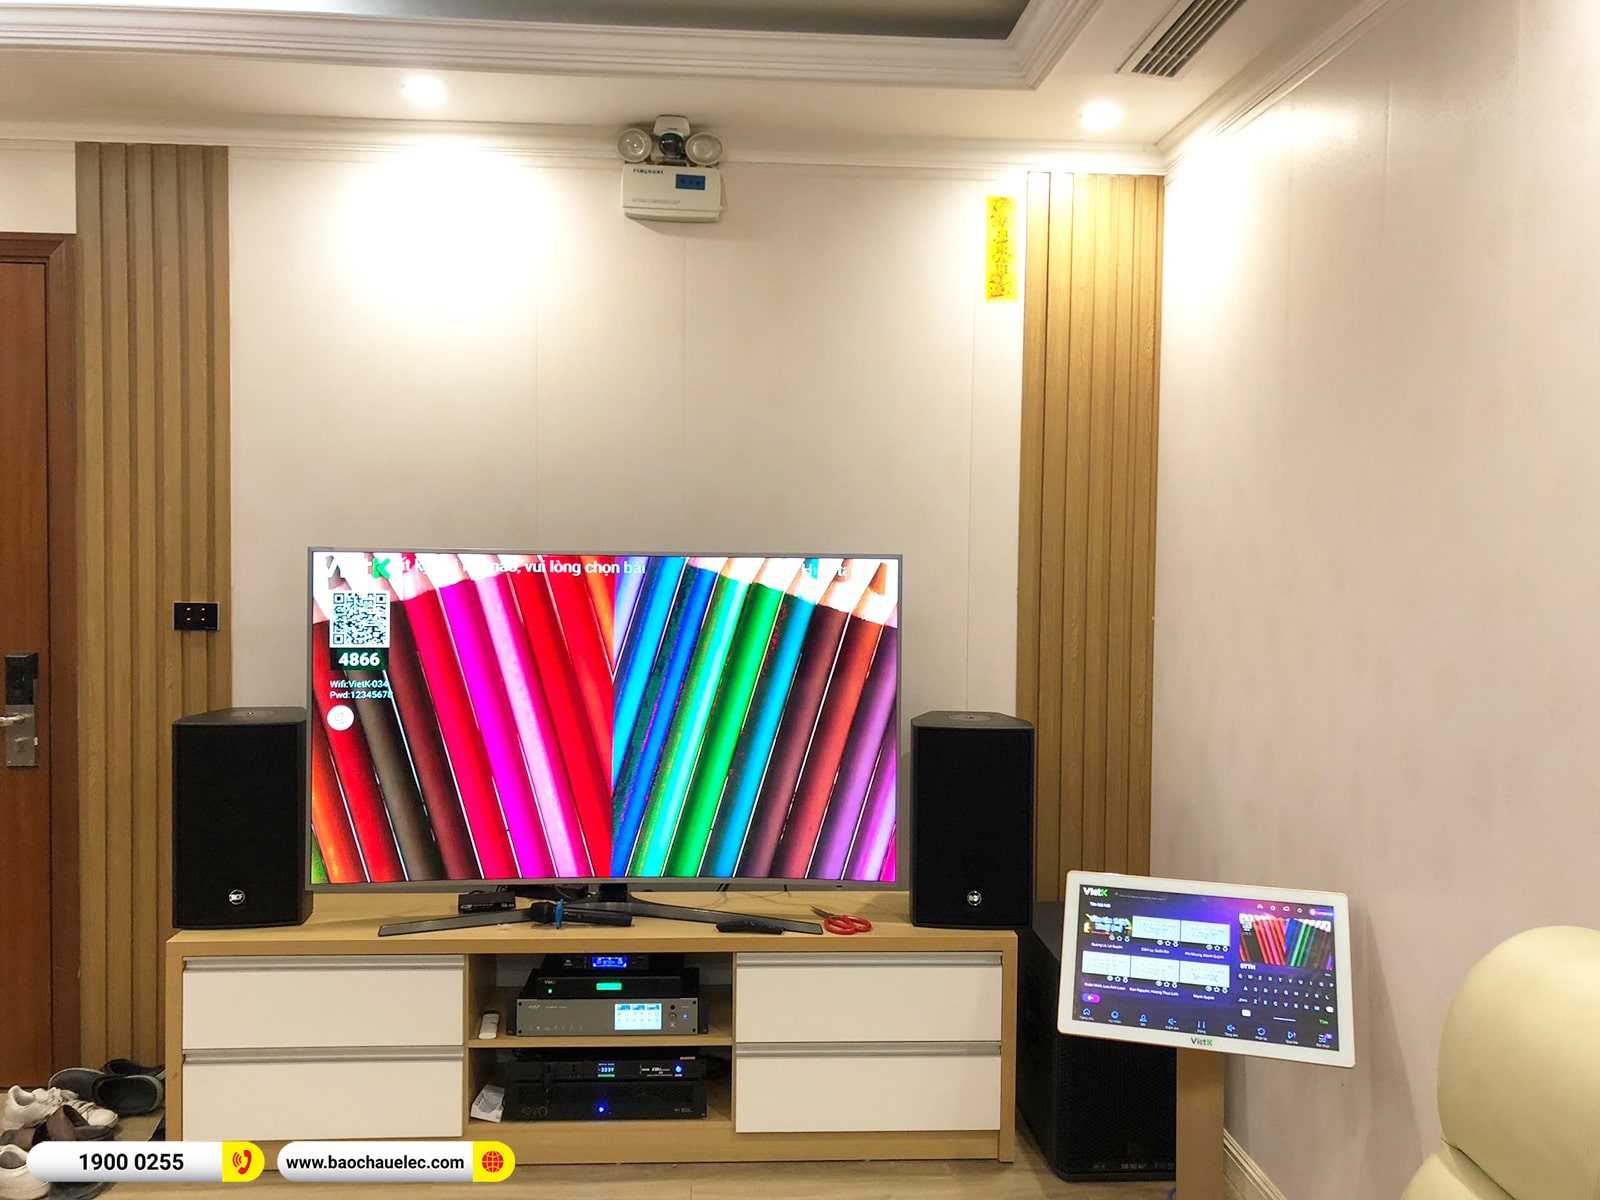 Lắp đặt dàn karaoke RCF khoảng 167tr cho anh Việt tại Hà Nội (RCF C3110-126, IPS 2.5K, K9900II Luxury, 702AS MK3,...)